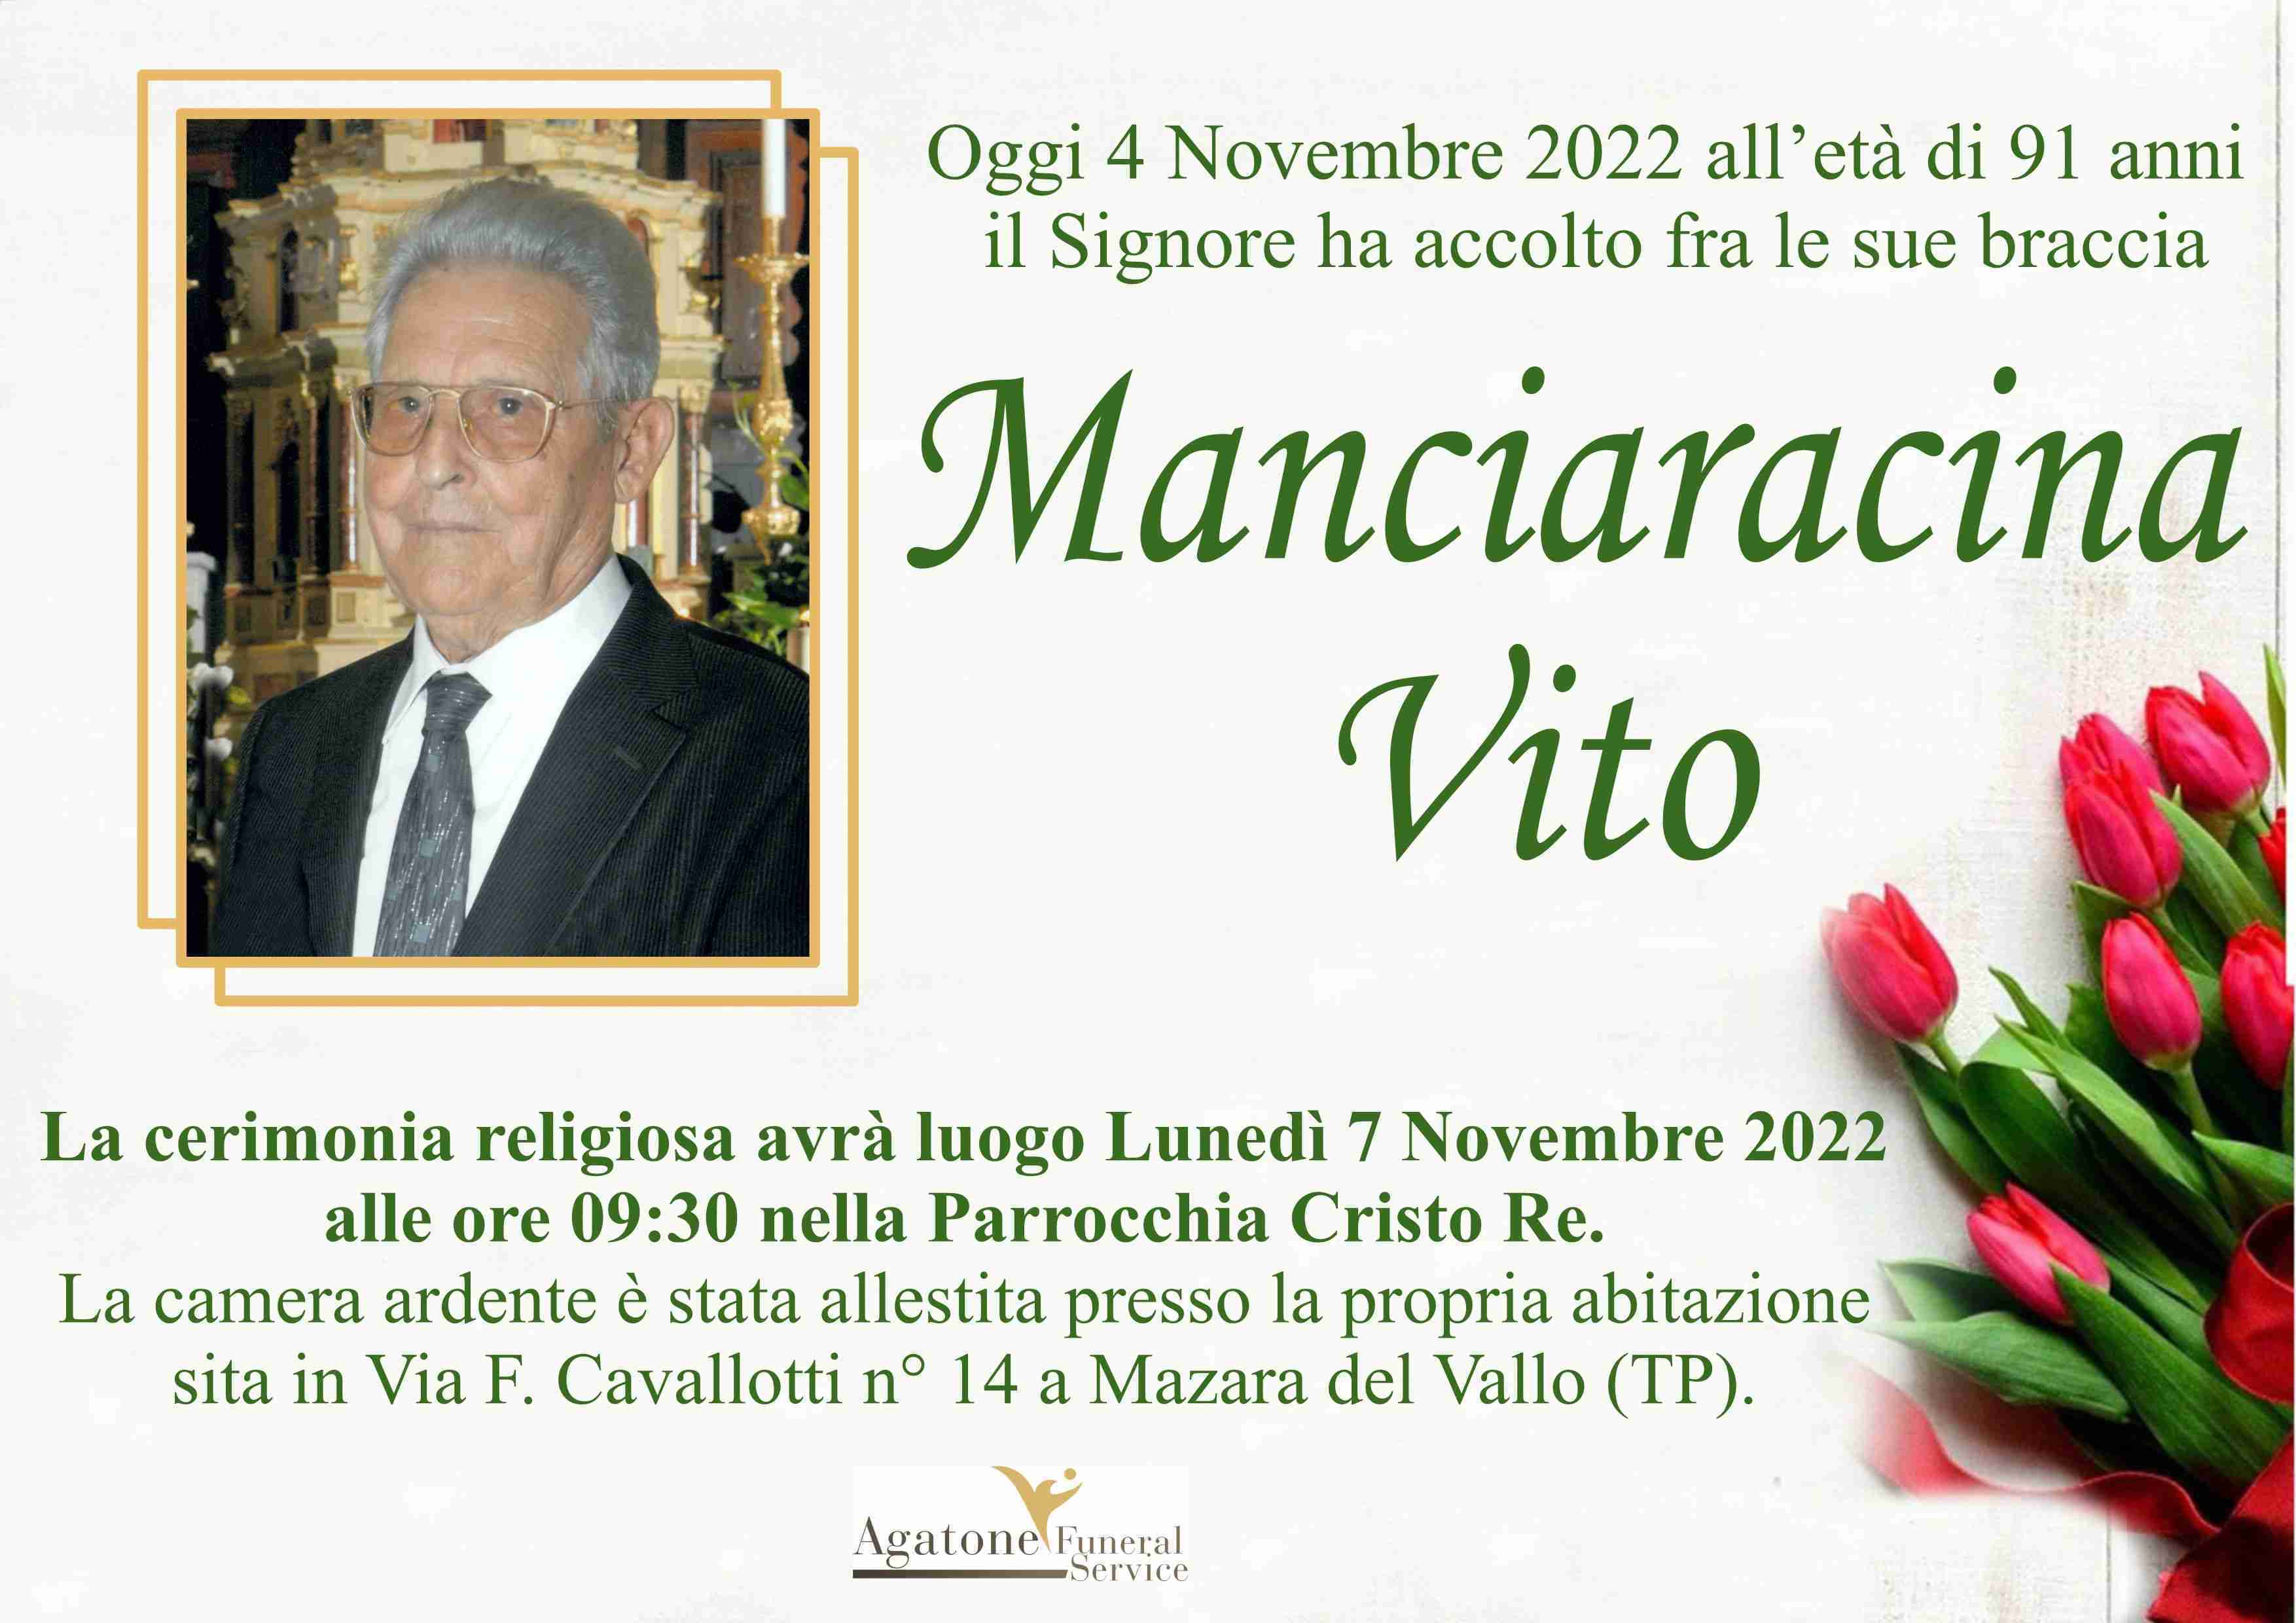 Vito Manciaracina